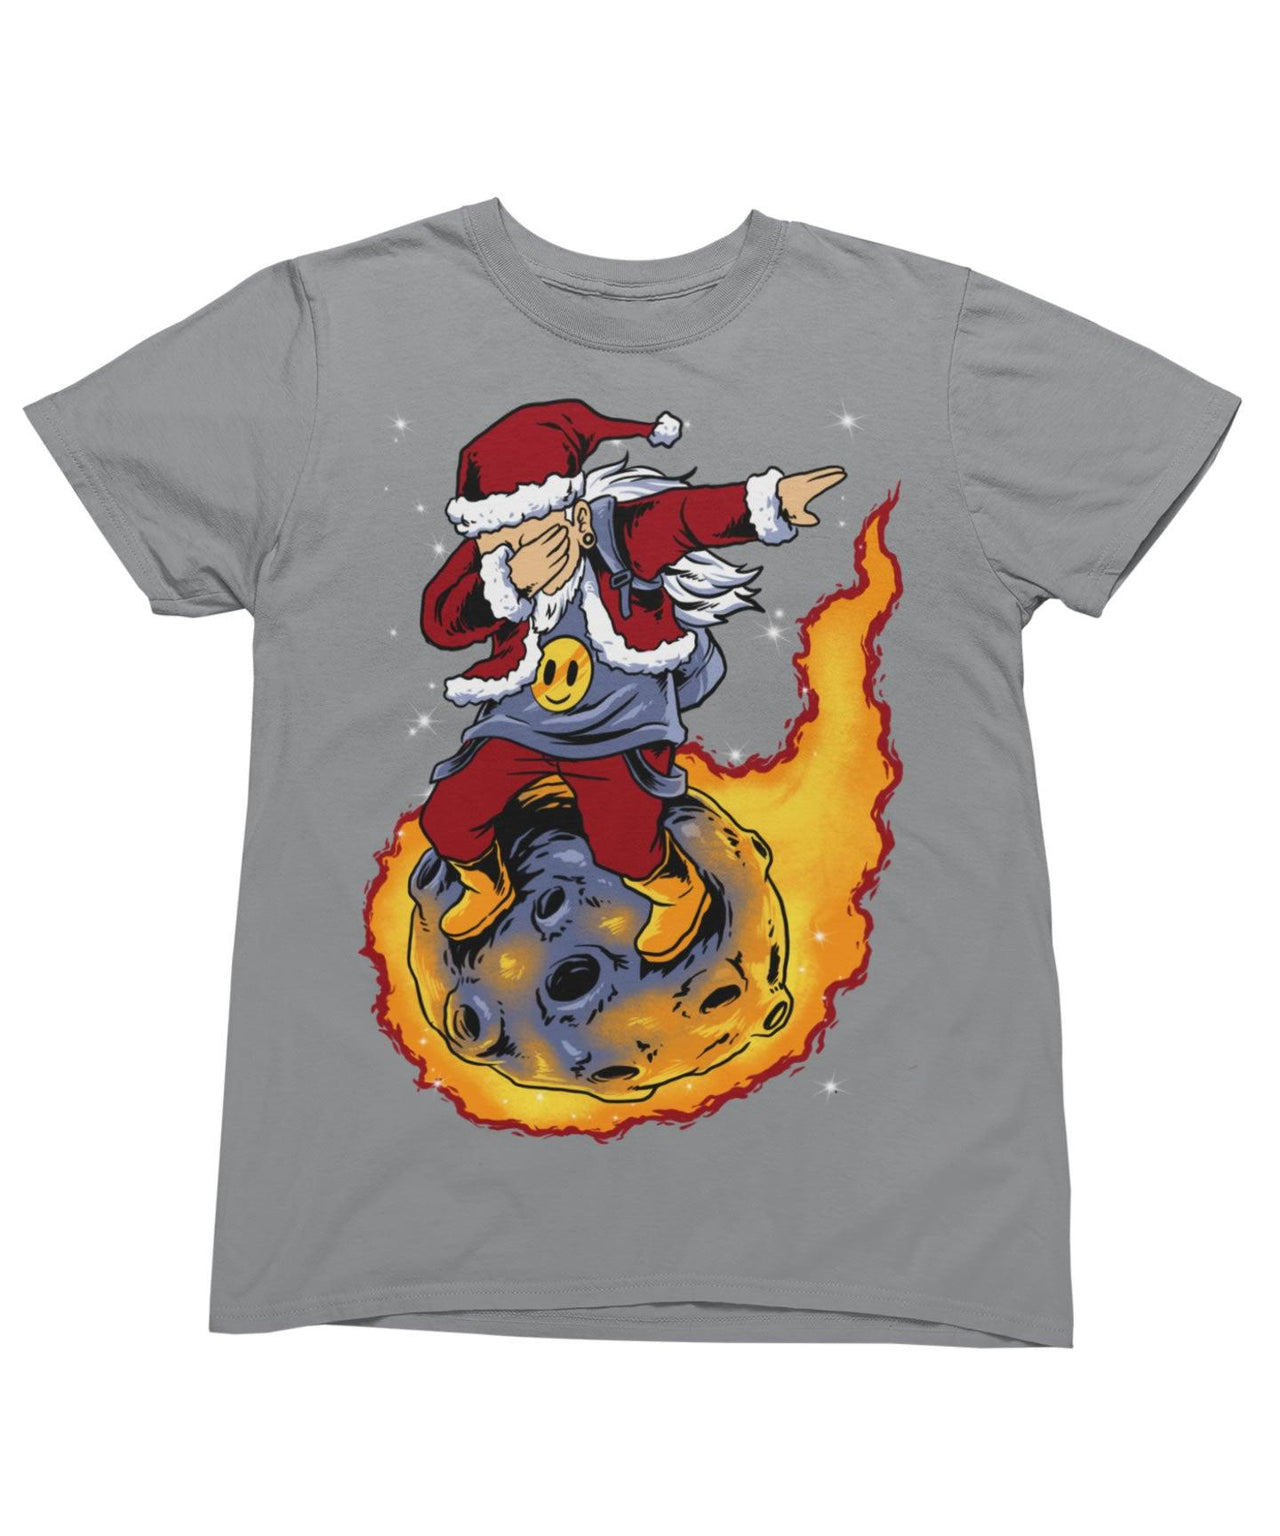 Skywalker Santa Unisex Christmas Graphic T-Shirt For Men 8Ball